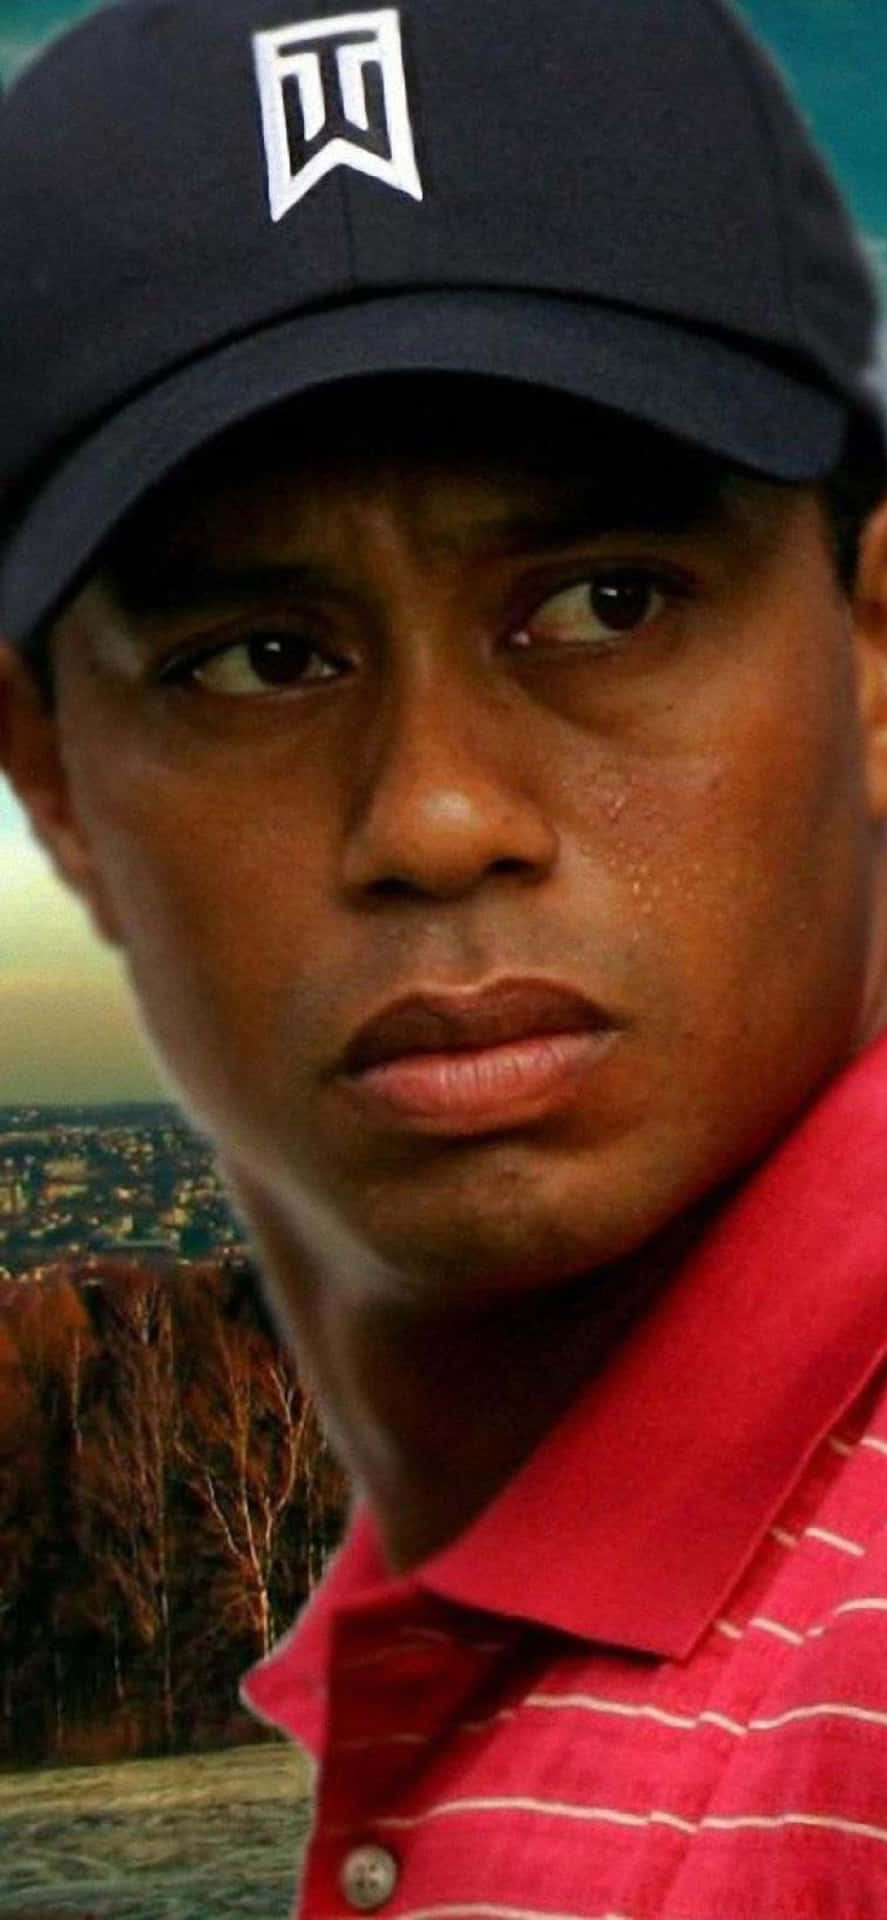 Fondode Pantalla Para Iphone De Tiger Woods En Primer Plano. Fondo de pantalla